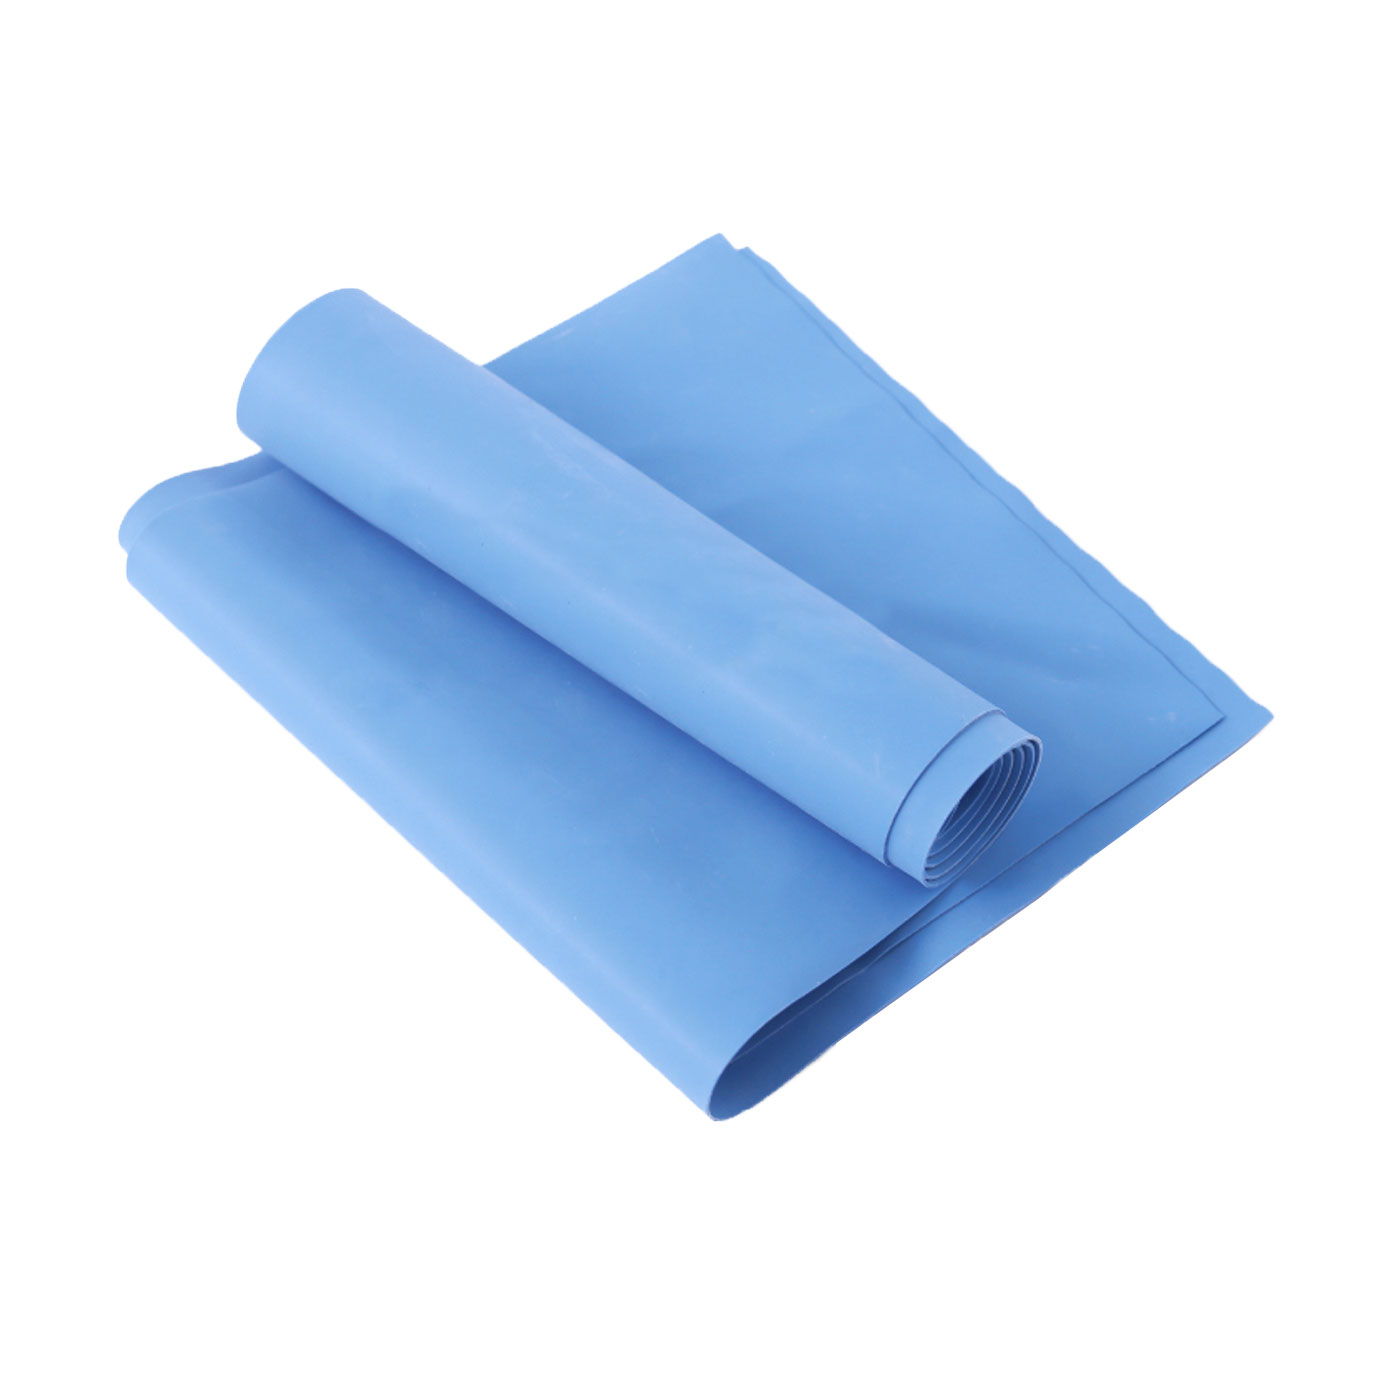 ALEX 伸展彈力帶藍厚度0.65mm (瑜珈繩 健身阻力帶 彈力繩 拉力帶 訓練帶【C-4702】≡排汗專家≡